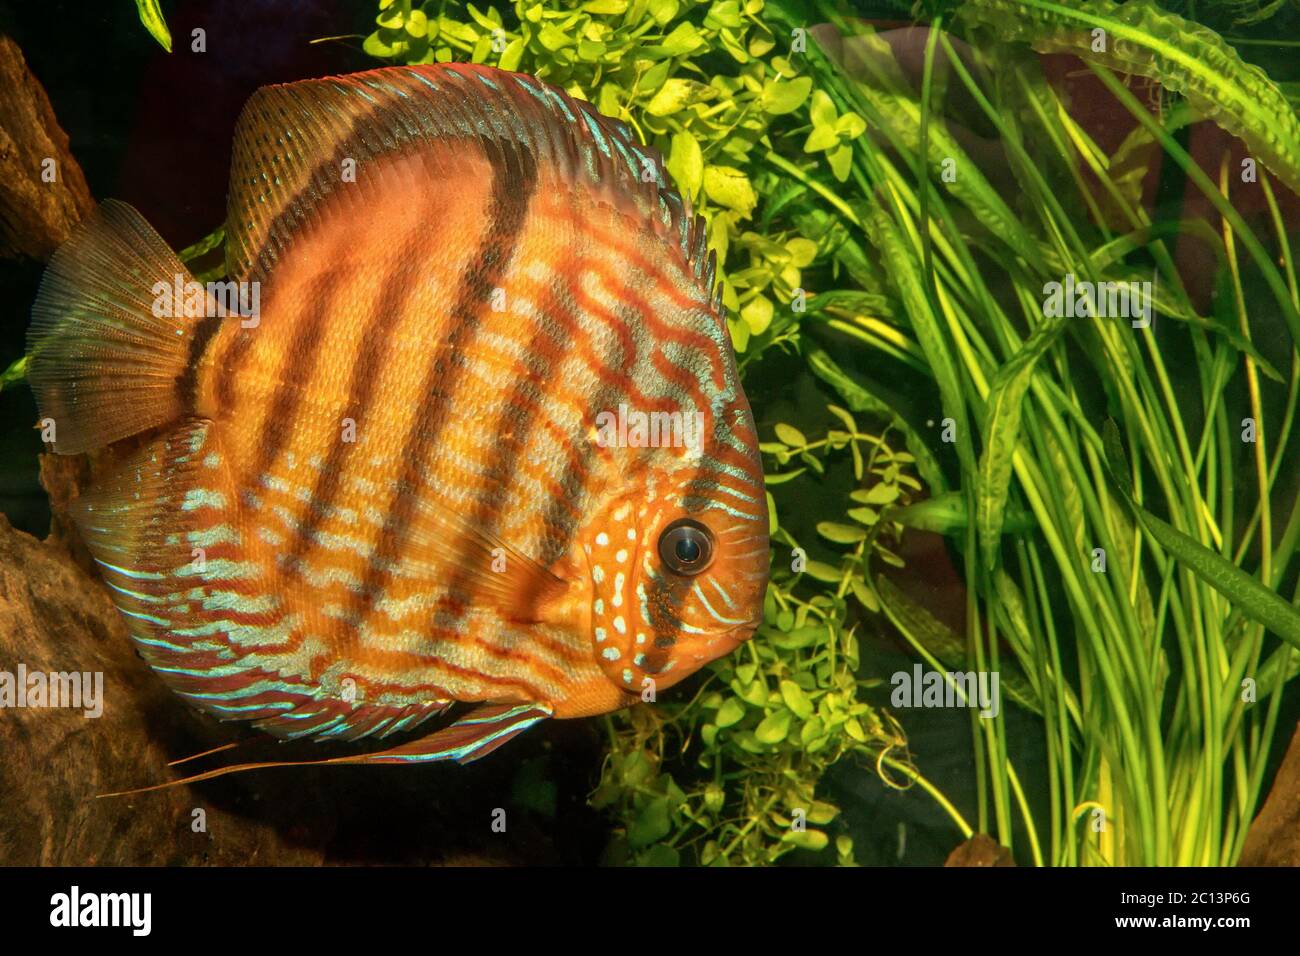 Portrait of discus fish (Symphysodon discus) Stock Photo